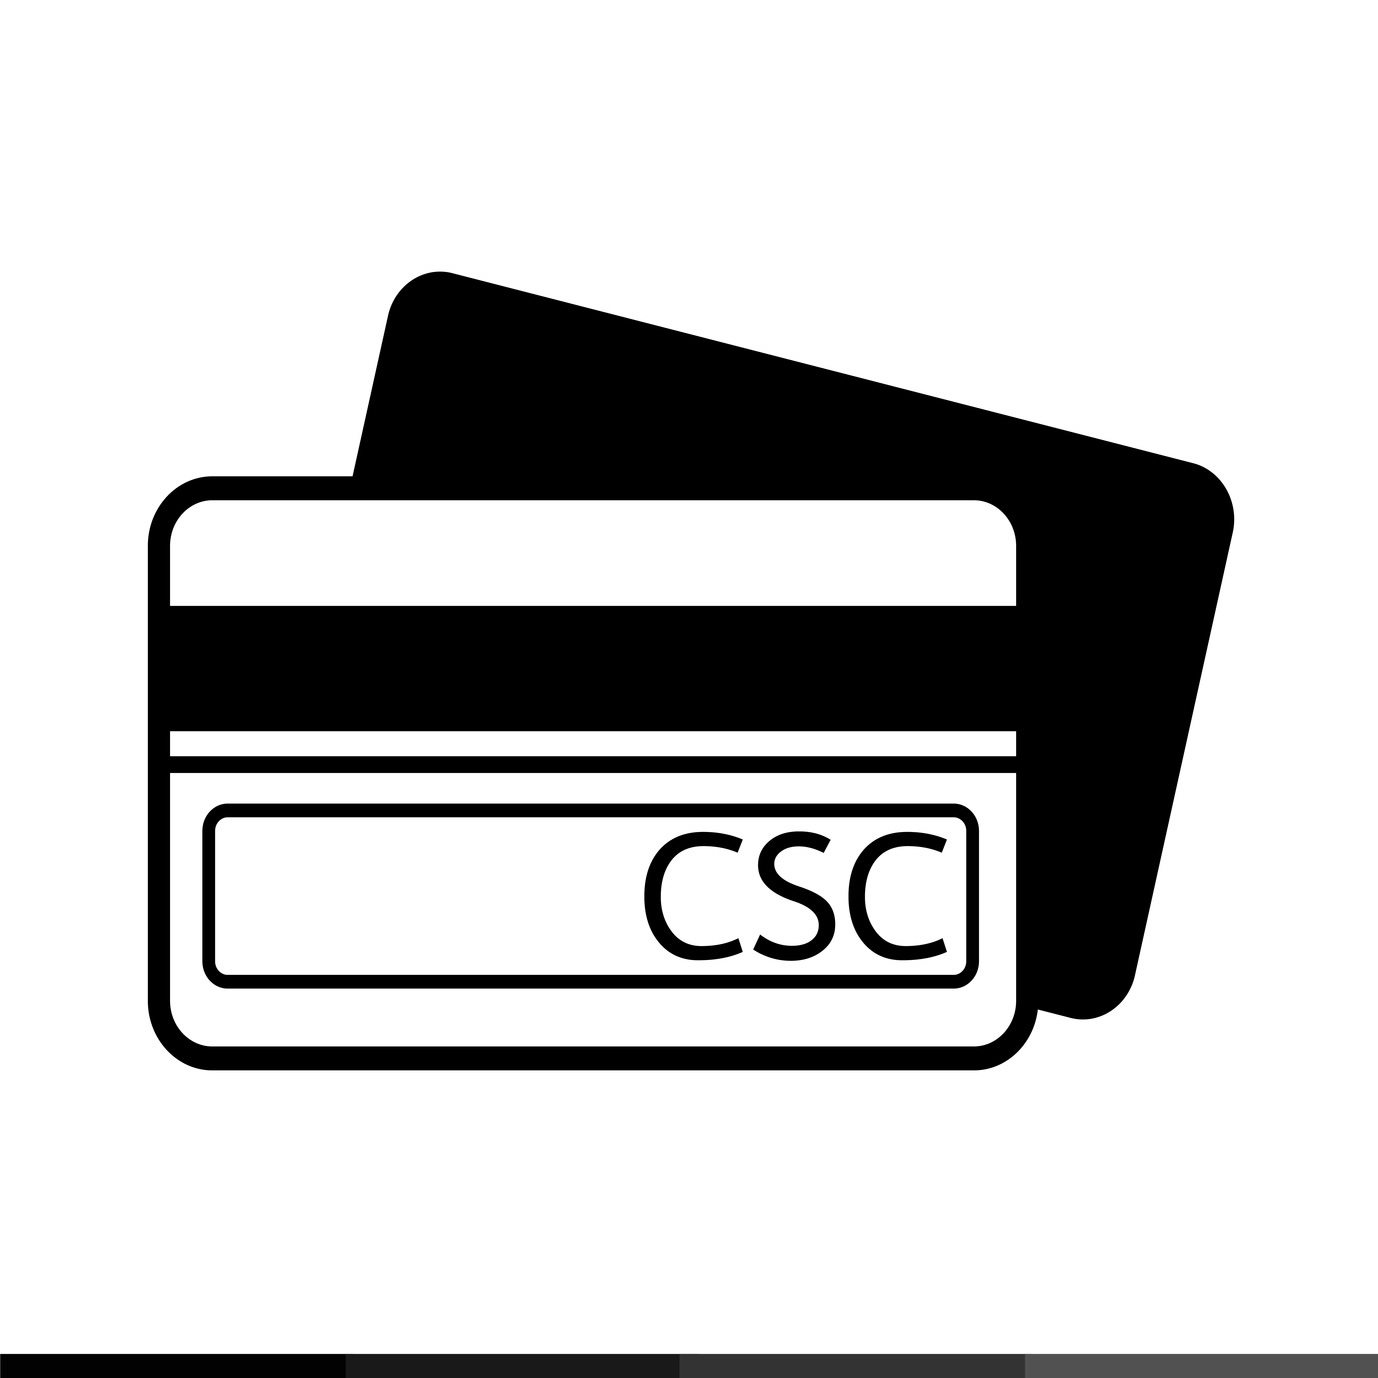 Cartão CSC - Definição, Conceito e O que é